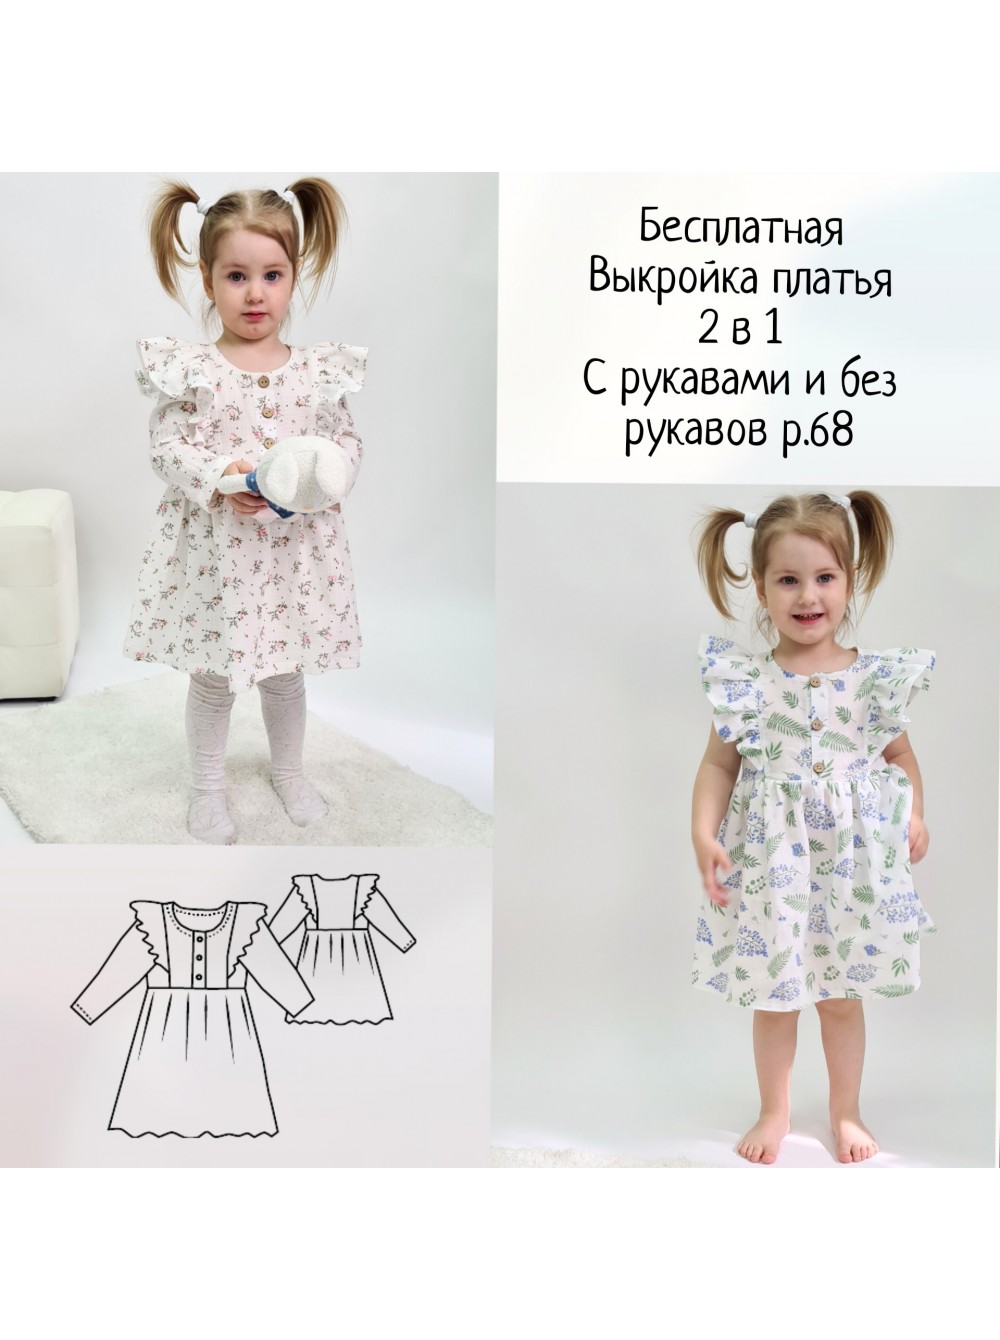 Платья, вышитые в украинском стиле